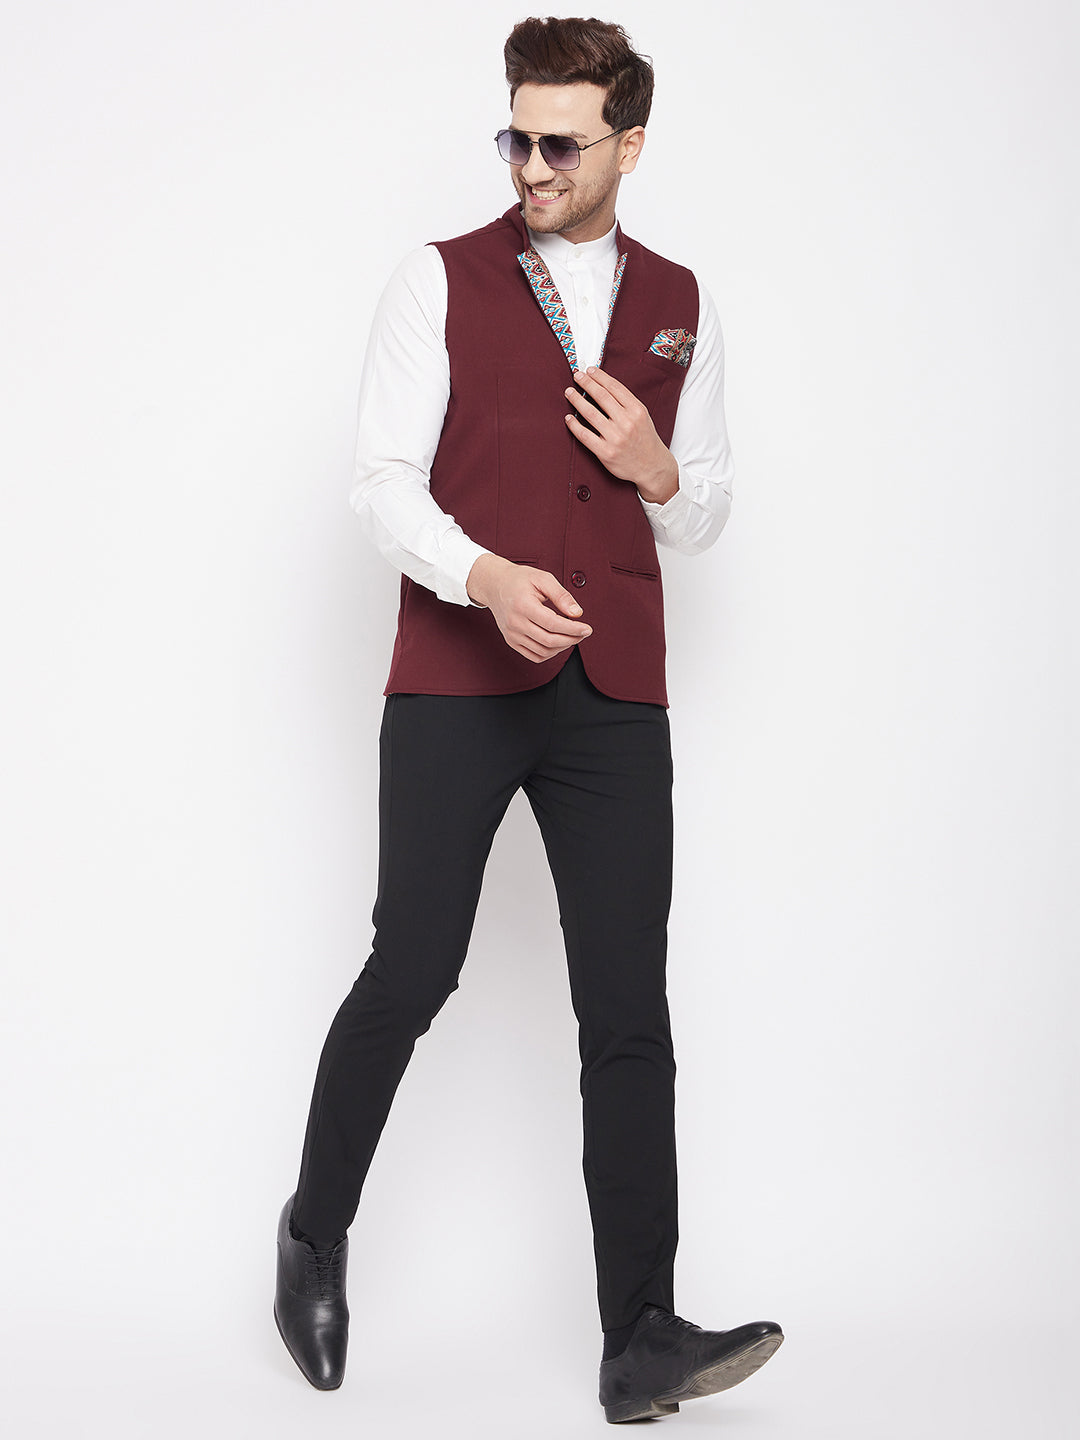 Men's Maroon Color Nehru Jacket-Contrast Lining-Inbuilt Pocket Square - Even Apparels